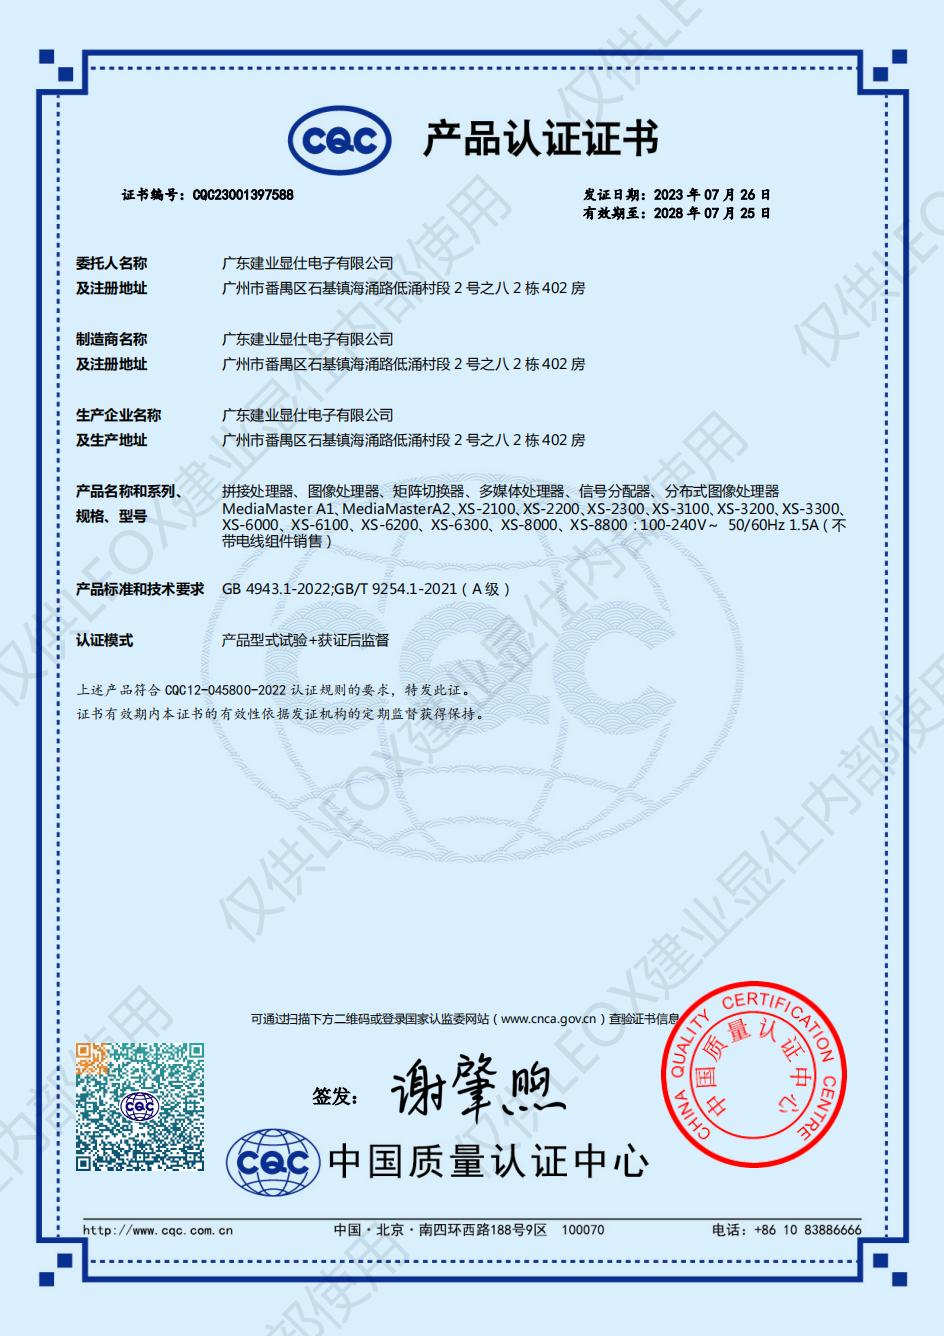 LEOX( 处理器）CQC中文证书